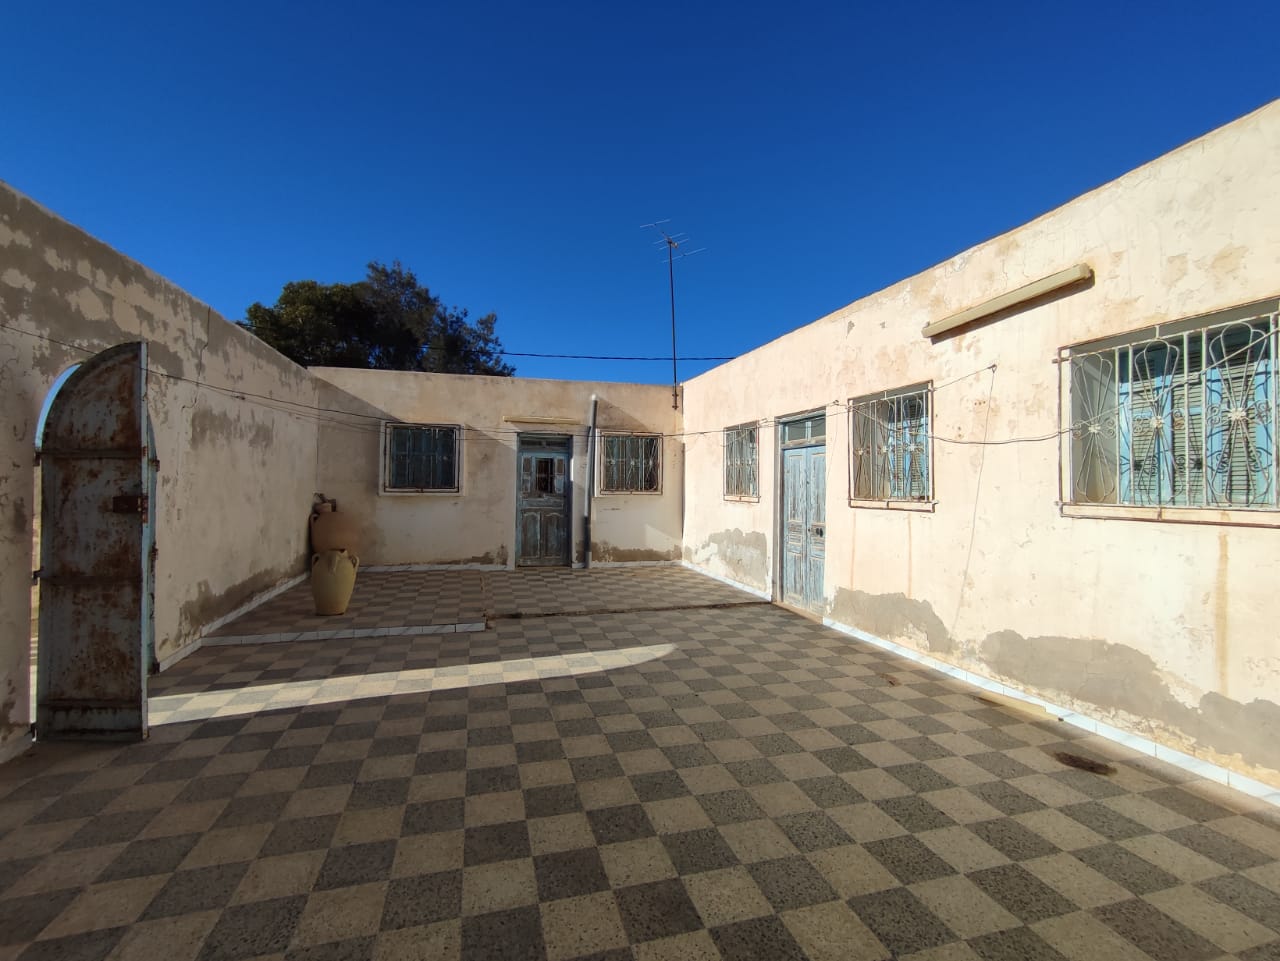 Houch typique titré à rénover avec terrain dans un quartier calme à vendre a Djerba